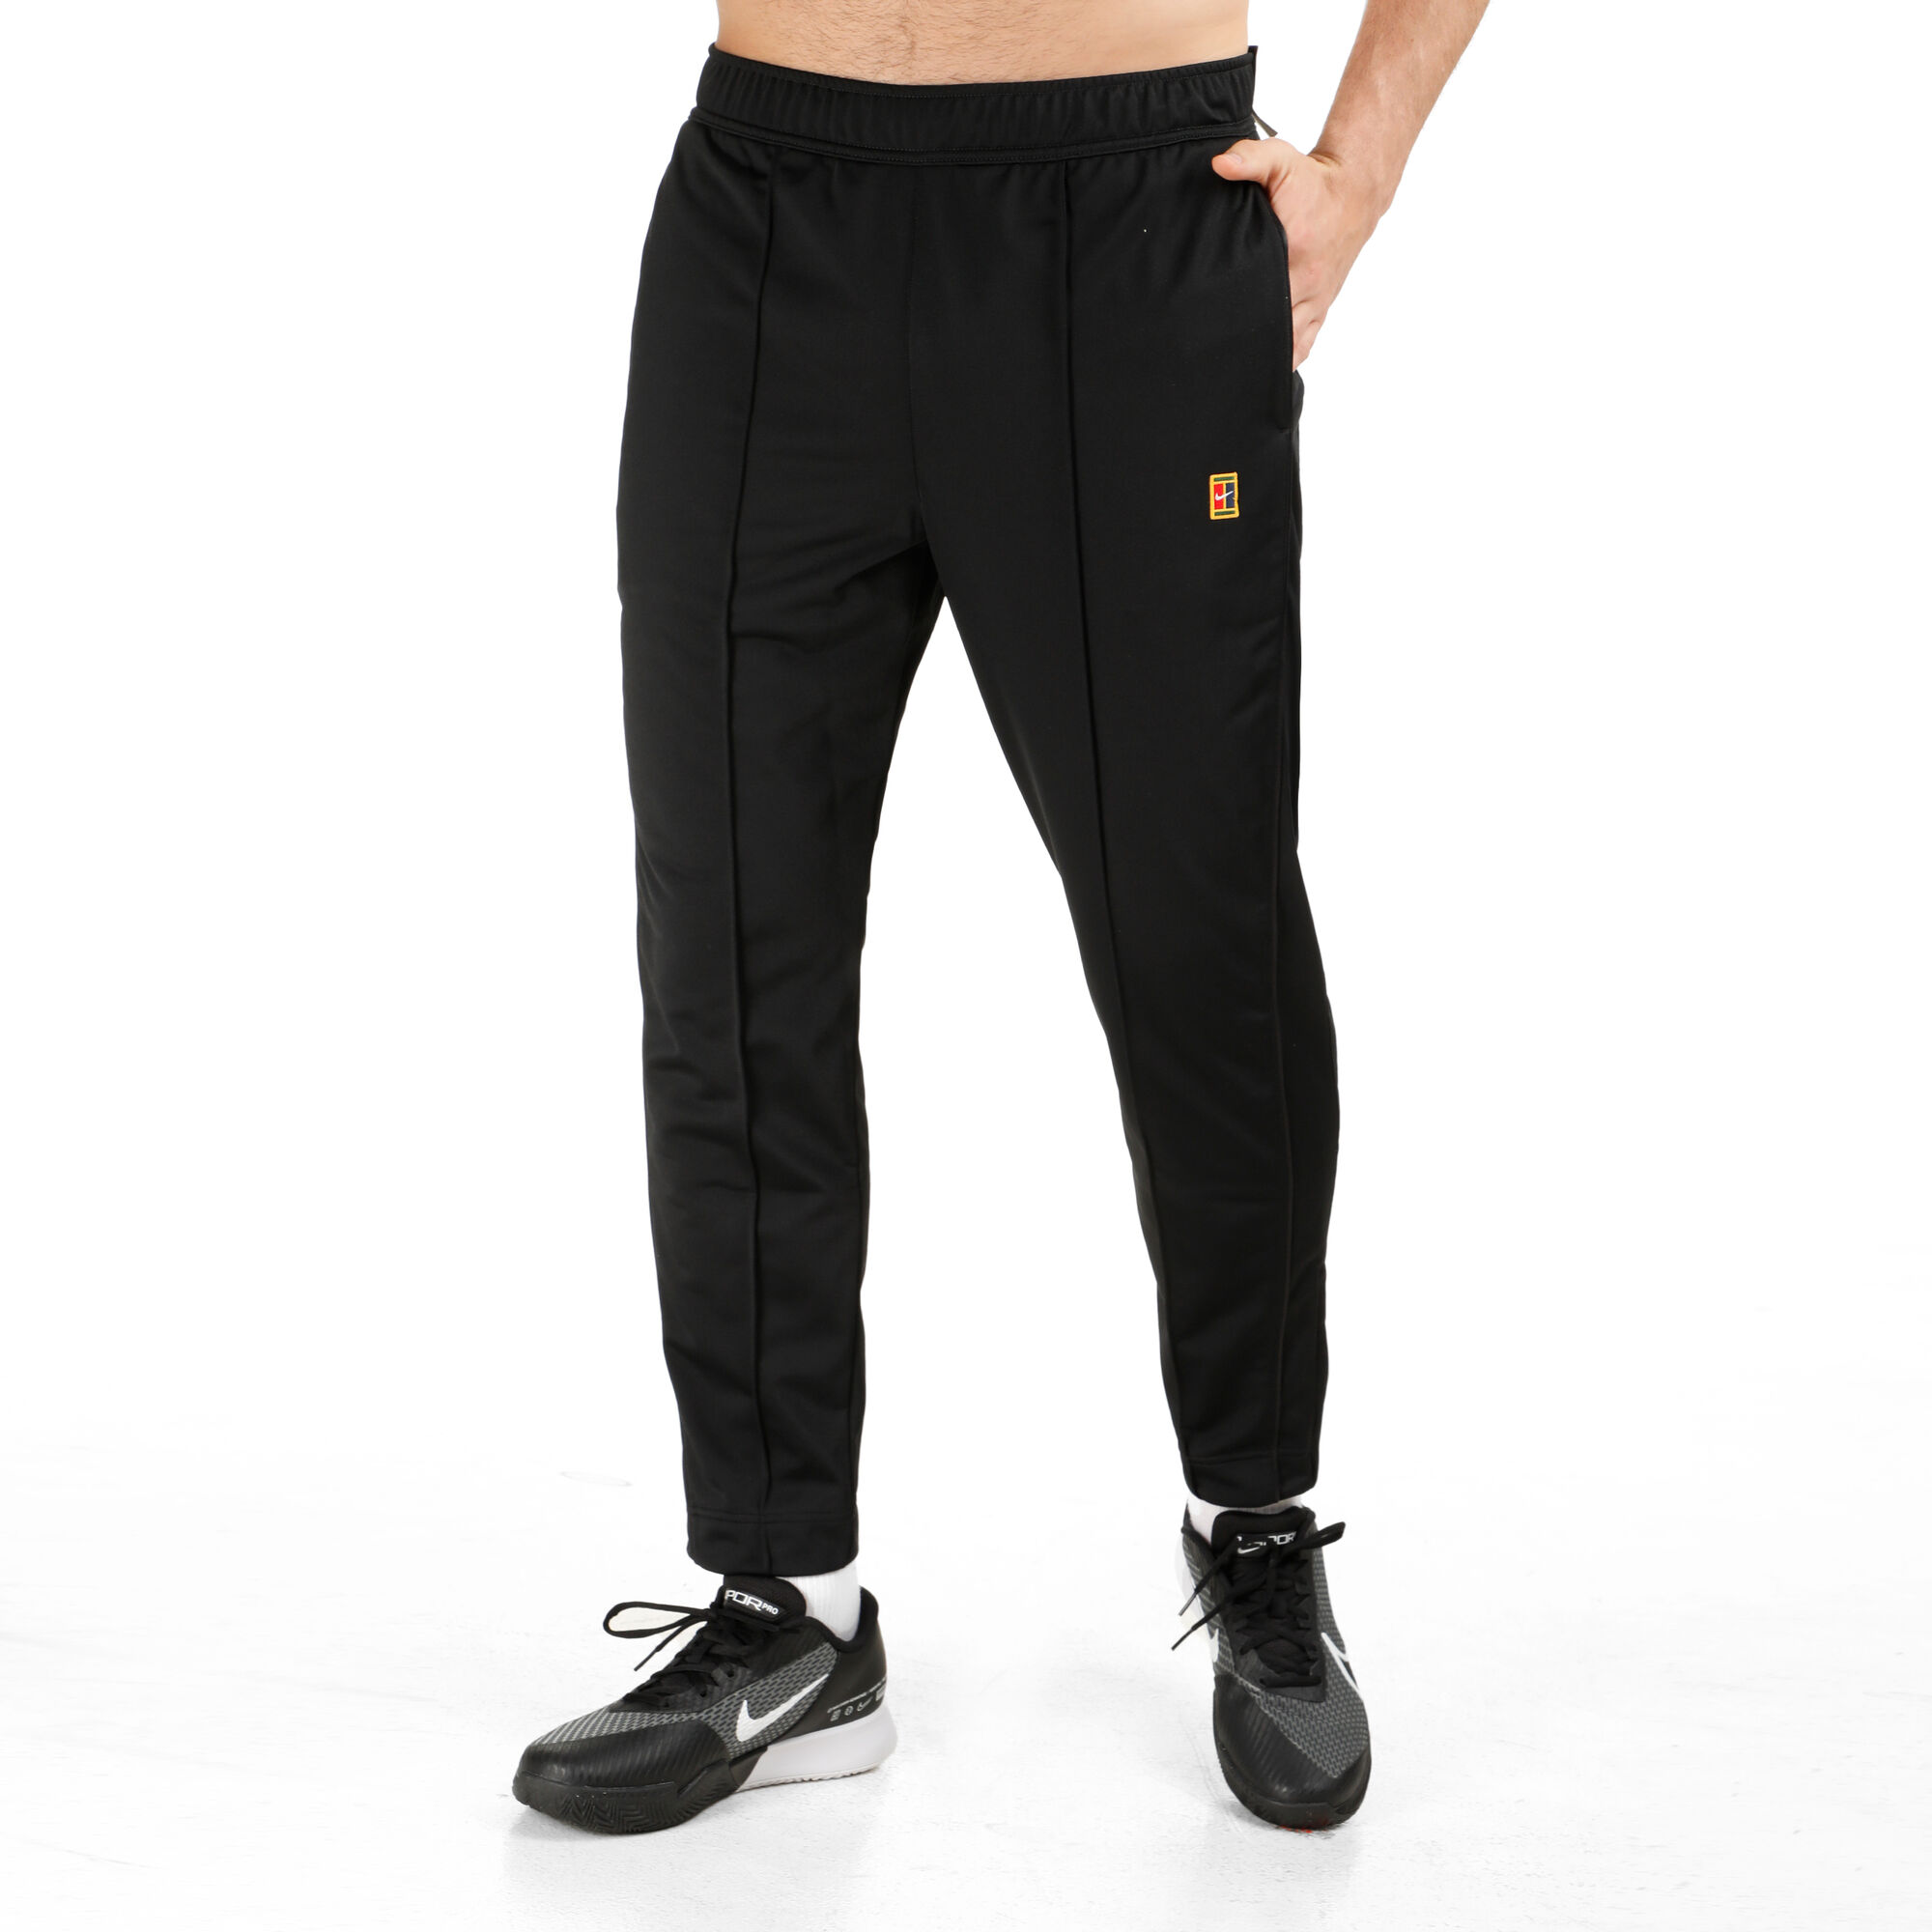 Buy Nike Heritage Suit Training Pants Men Black online